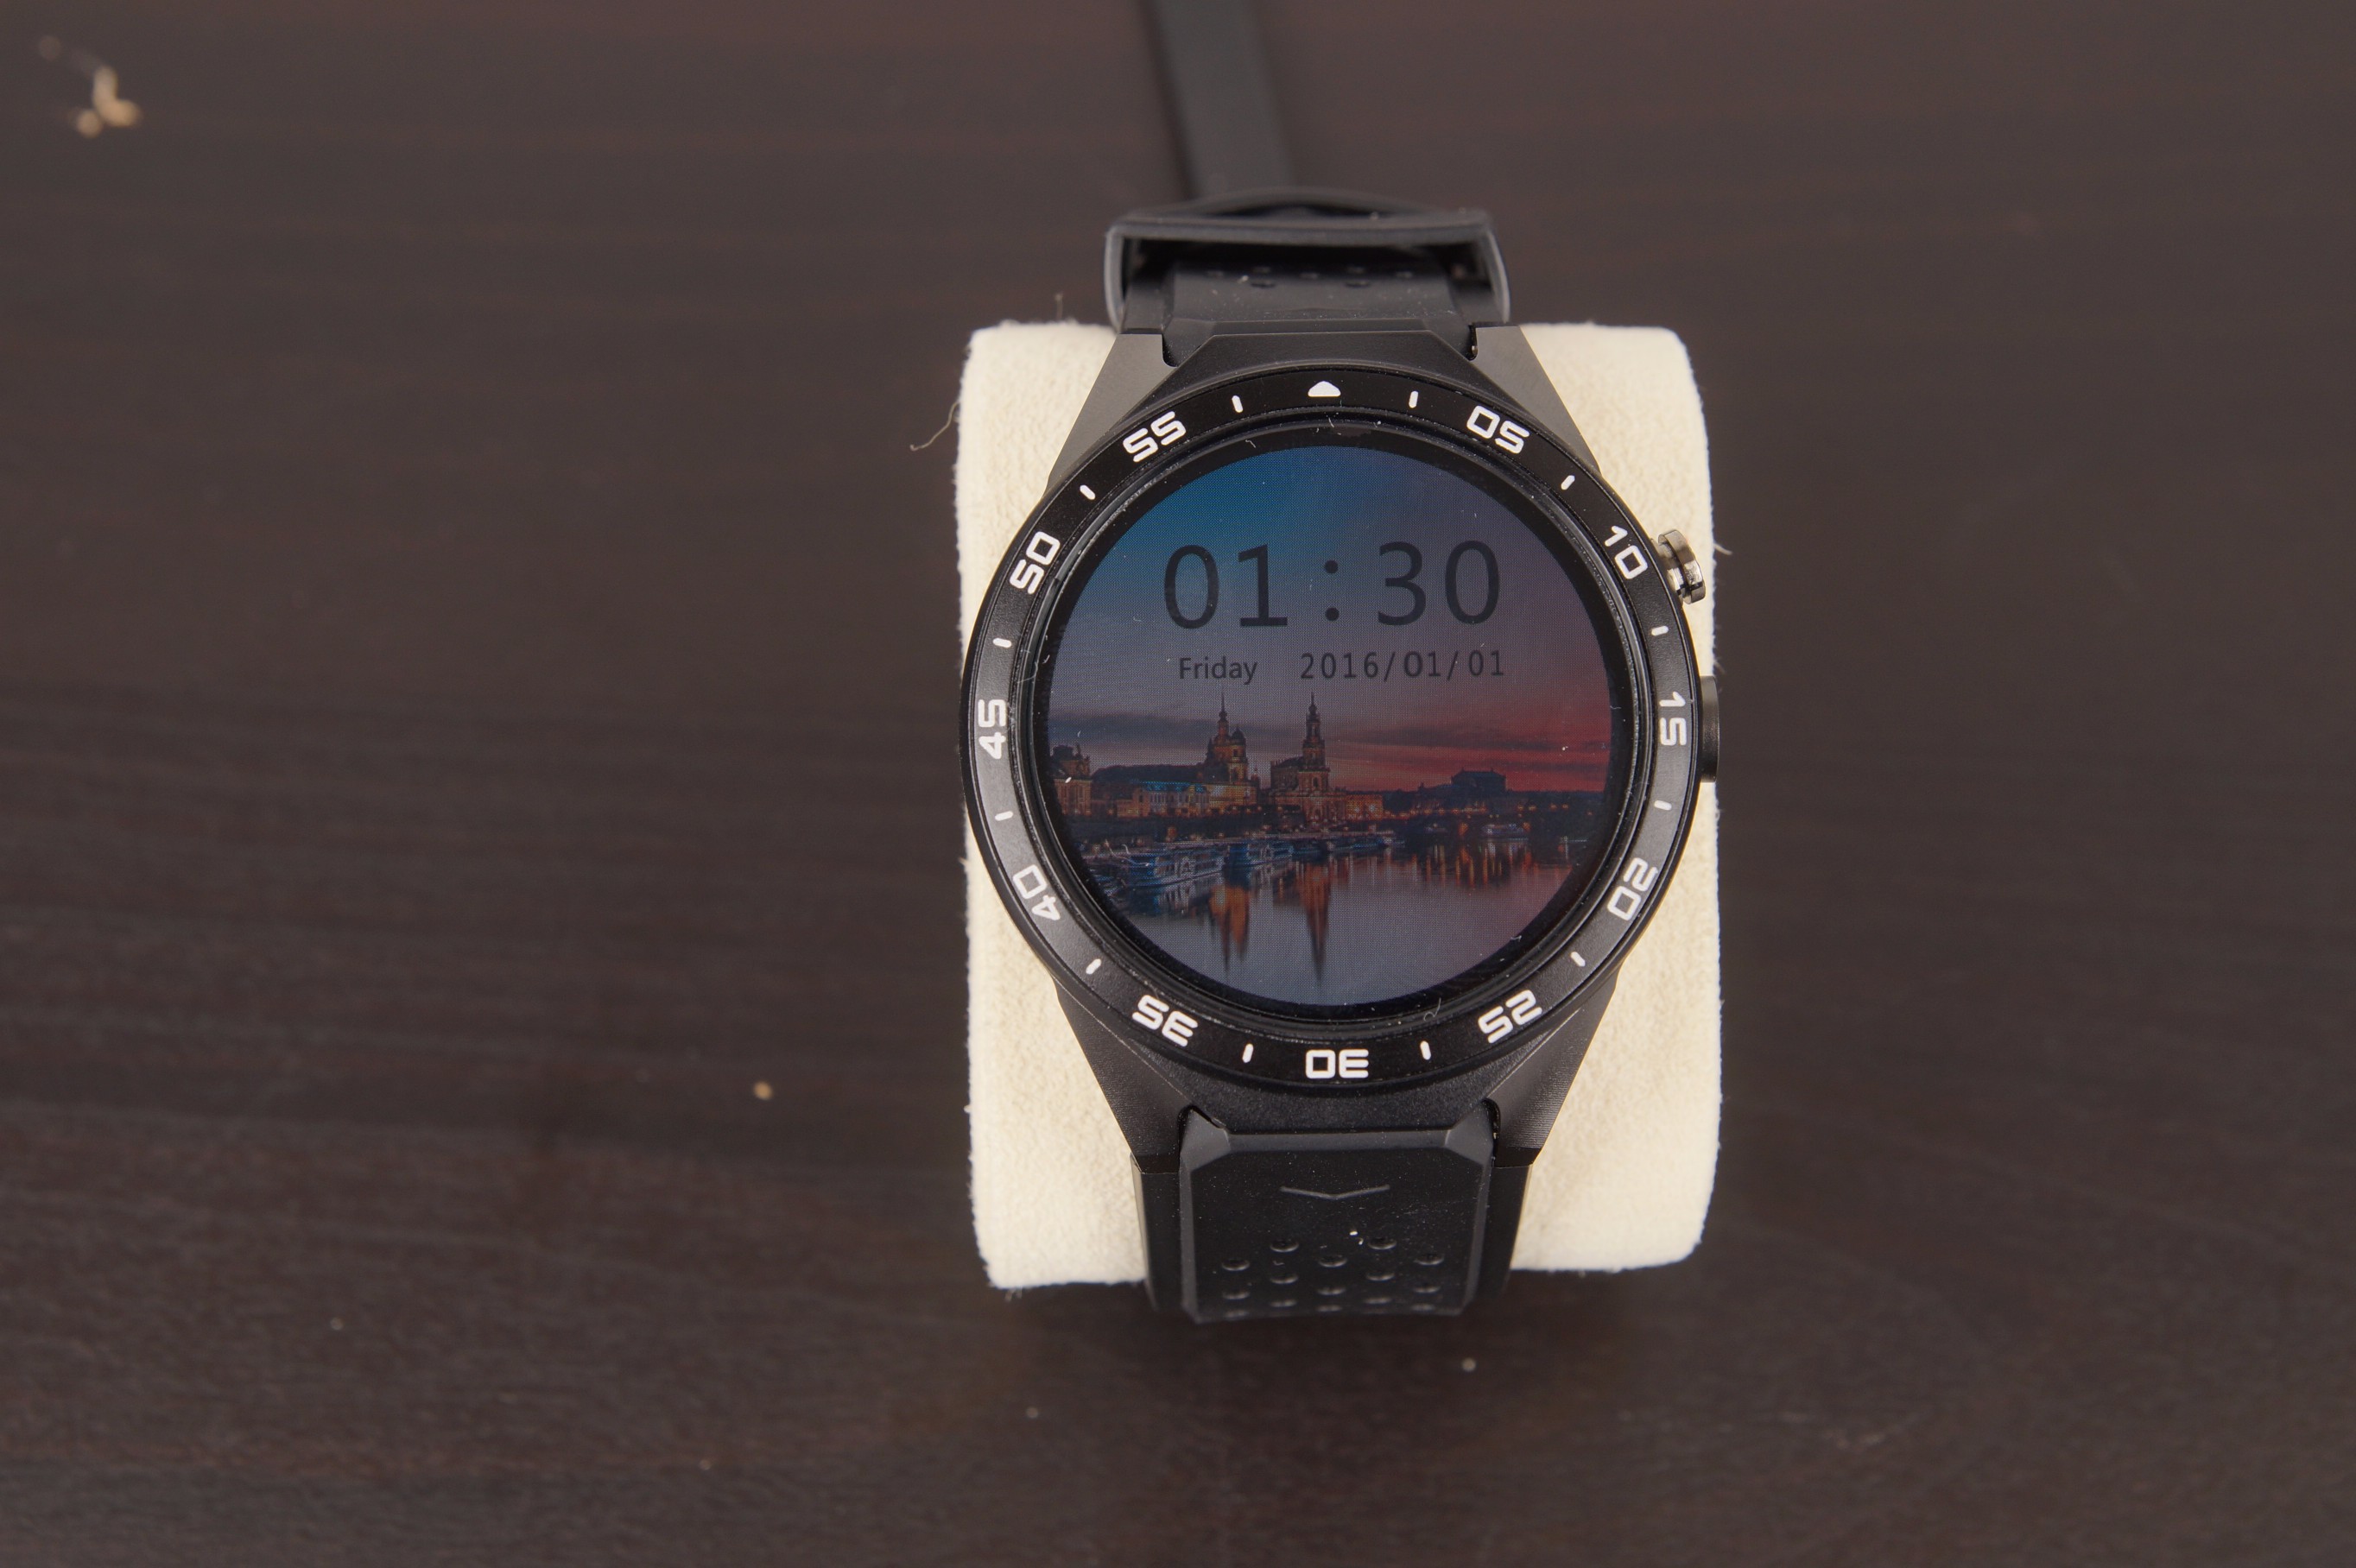 Original Kingwear GT88 Smart Watch Smartwatch Heart Rate